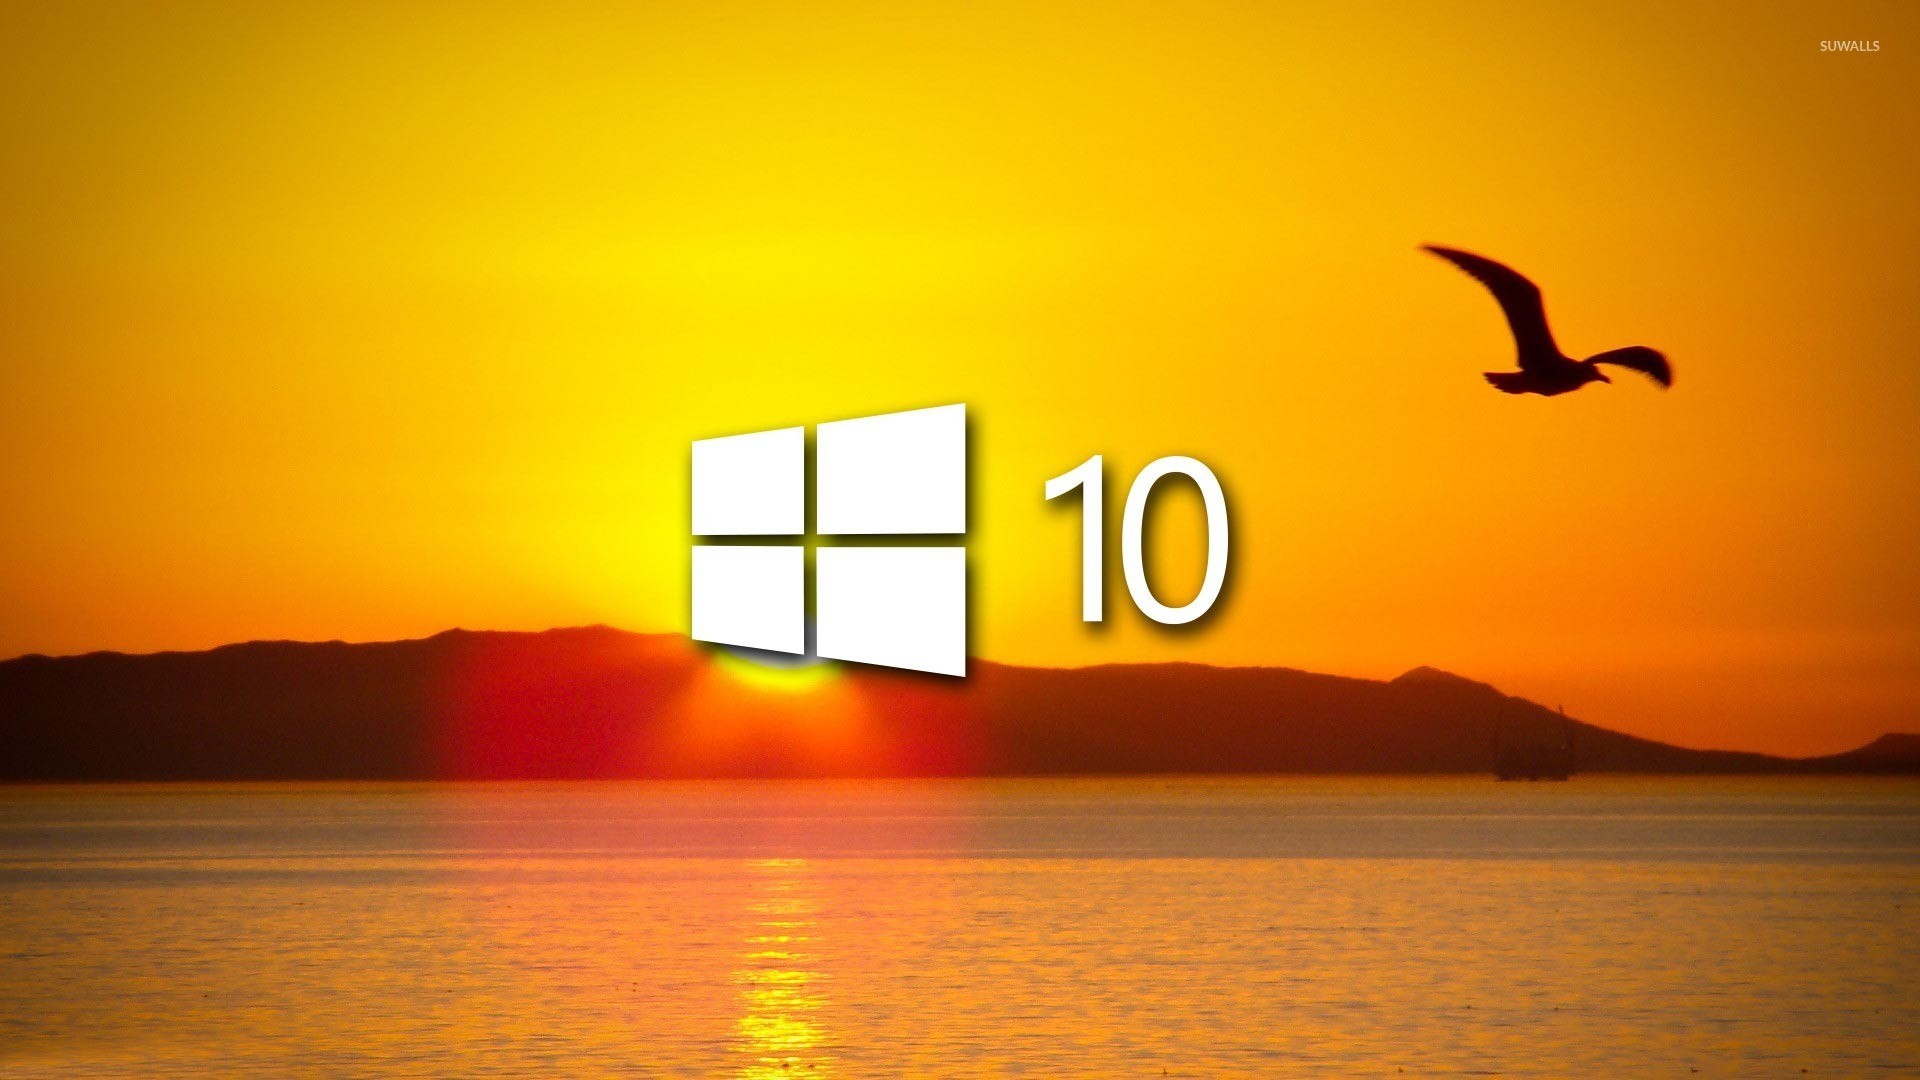 Hintergrundbilder Windows 10 Kostenlos Das Ist Der Sp - vrogue.co